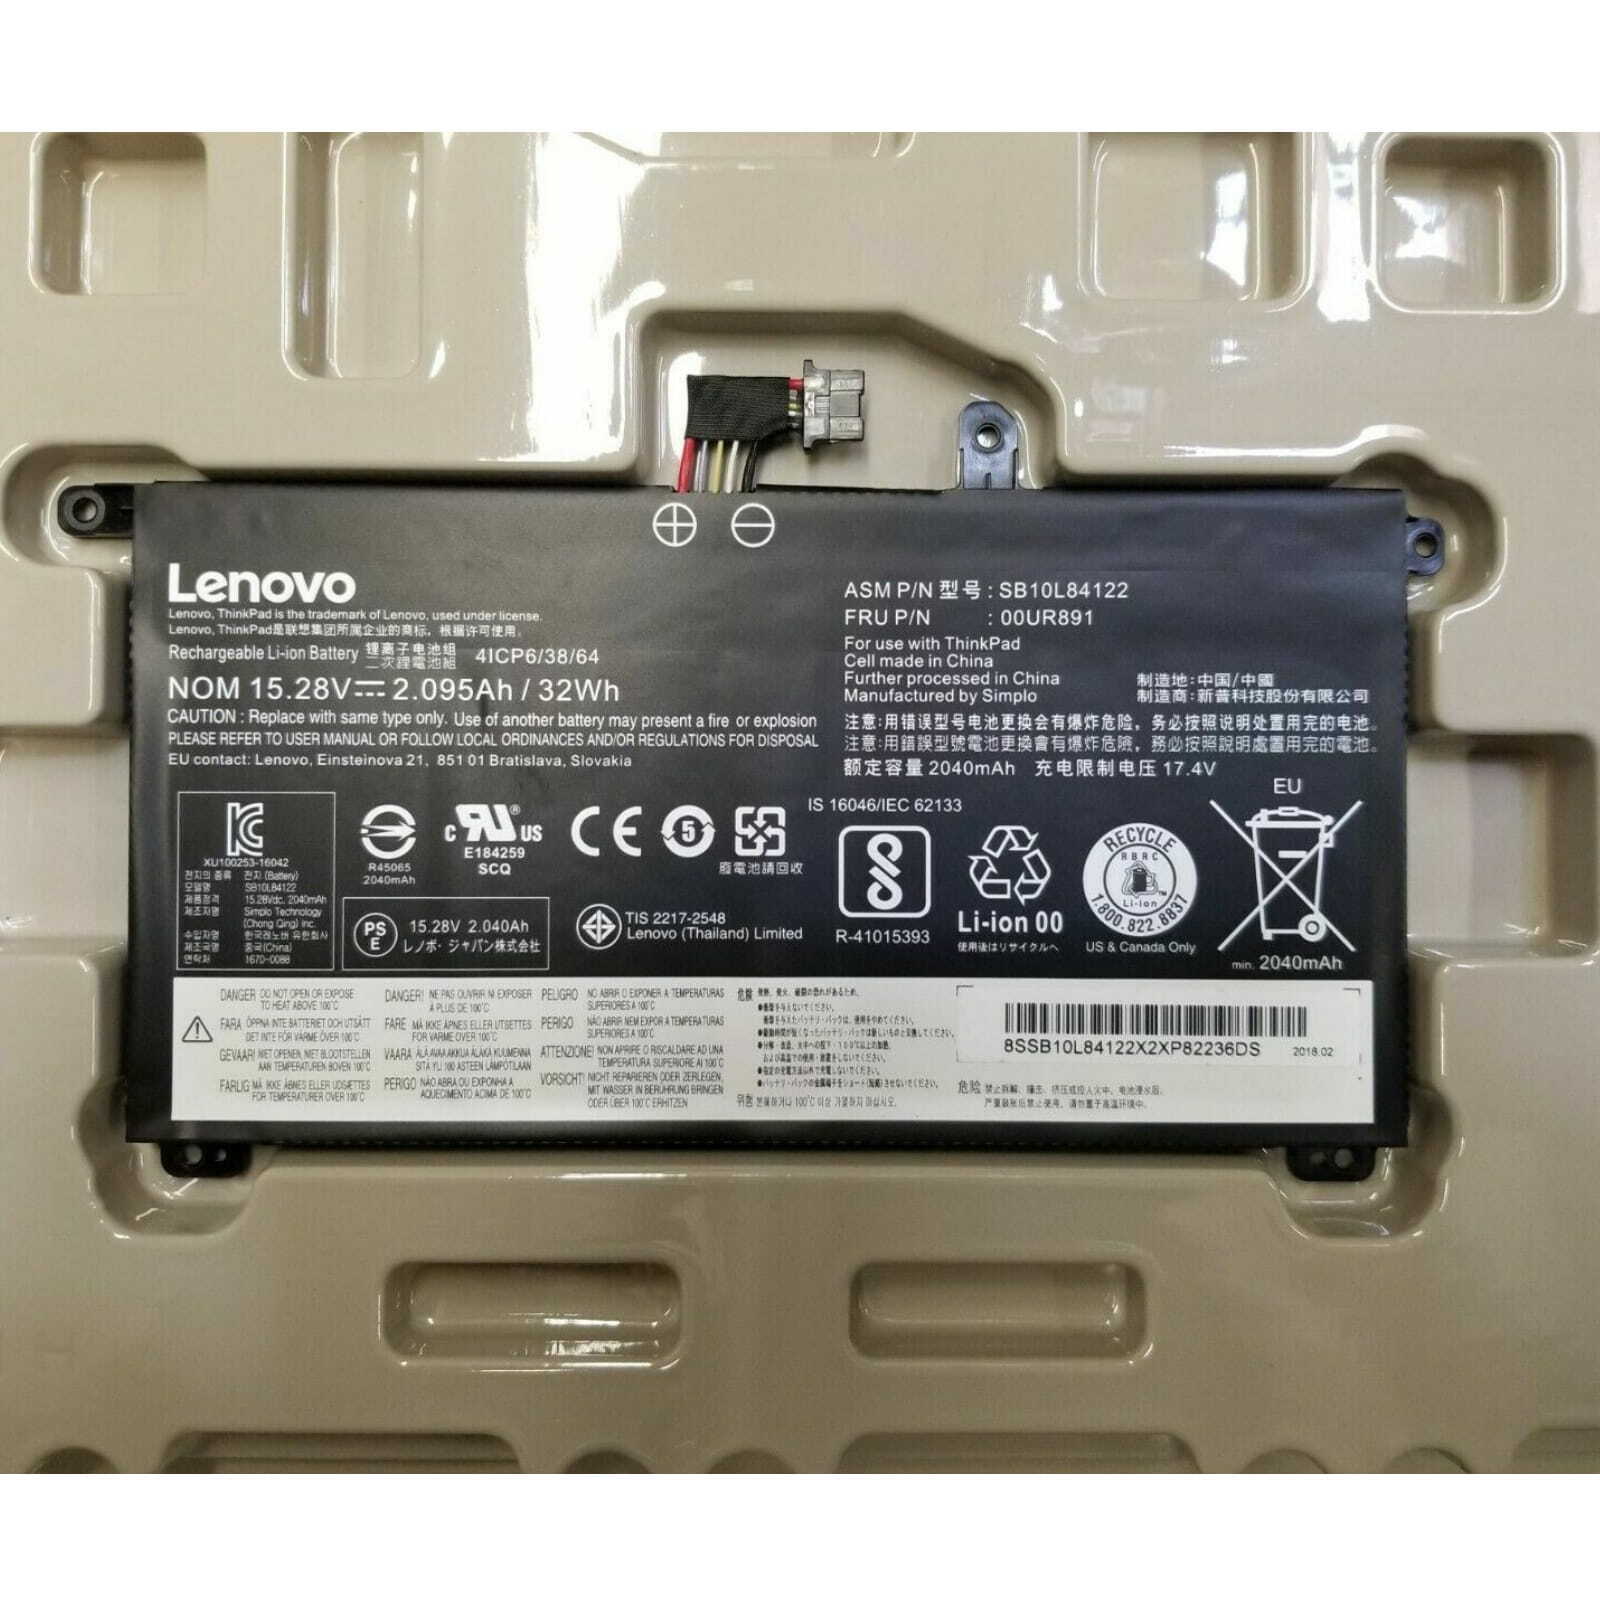 Genuine Battery 01AV493 For Lenovo ThinkPad T570 T580 P51S P52S 00UR891 00UR892